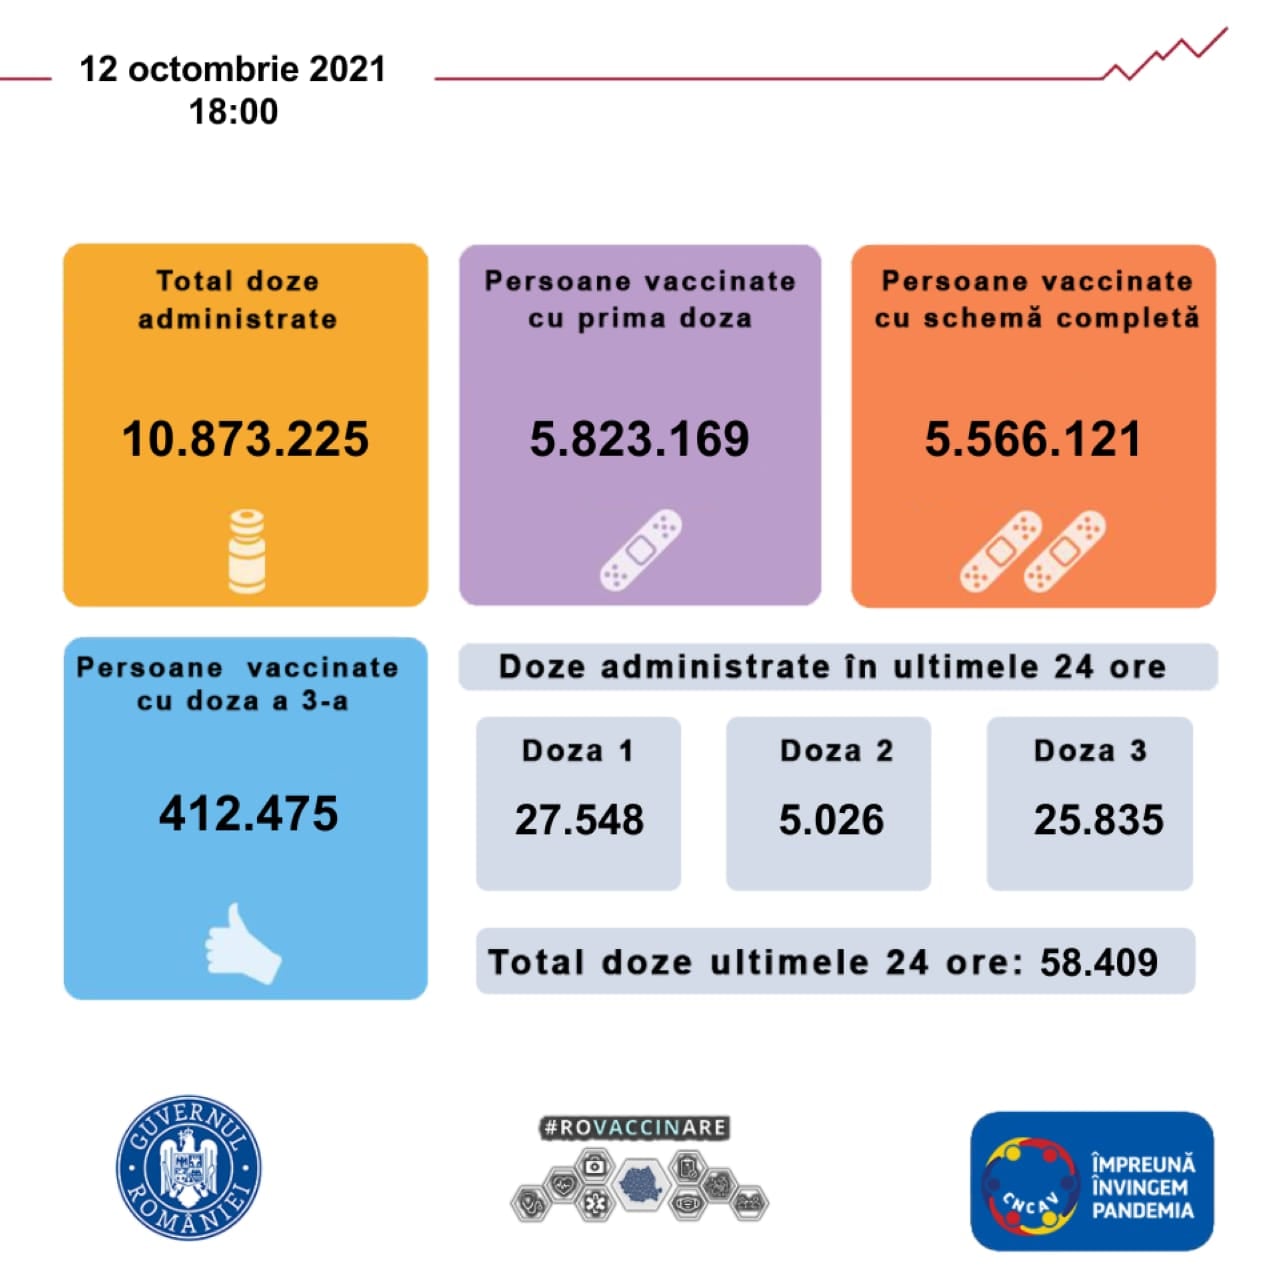 Rumäniens regering 5.8 miljoner rumäner vaccinerade hittills i landet